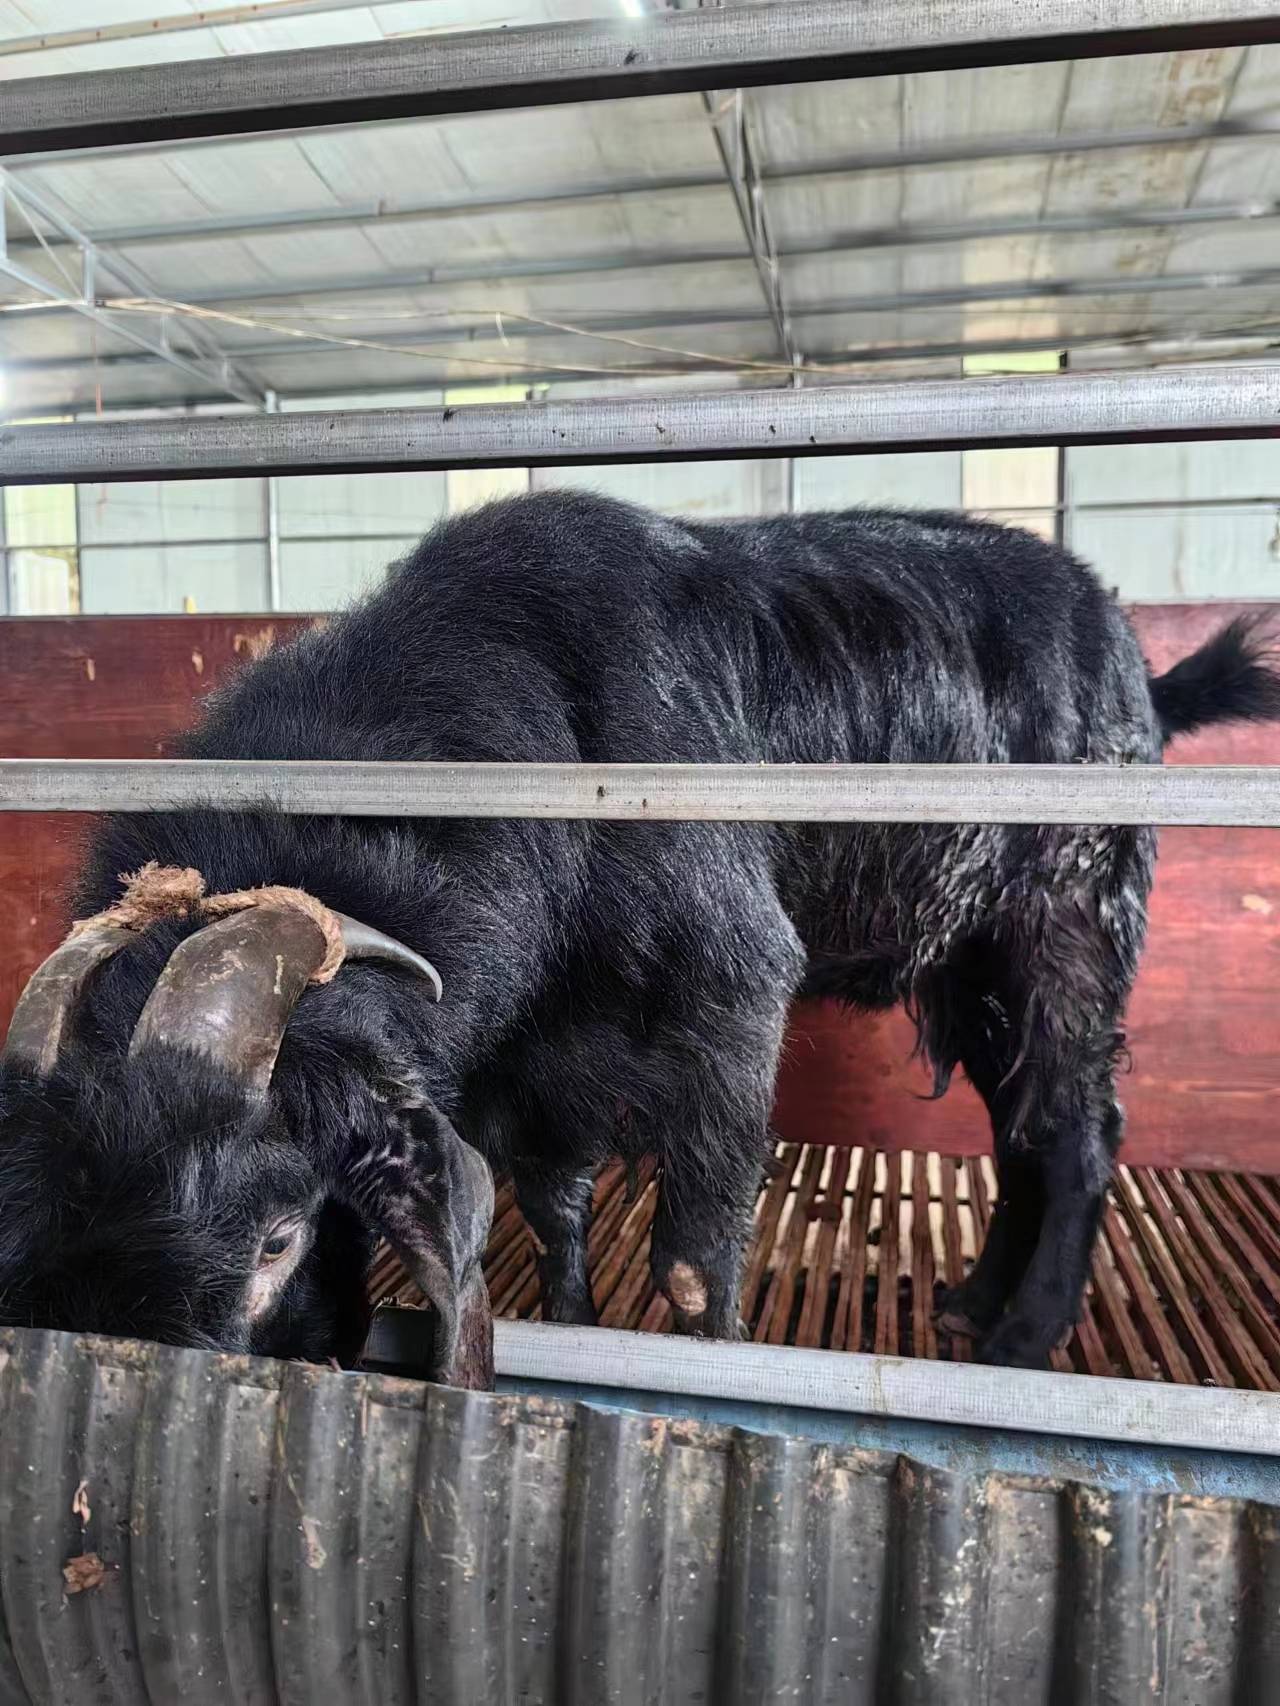 2013年返乡创业的80后,养殖金堂黑山羊和努比亚大耳羊,交流养殖技术